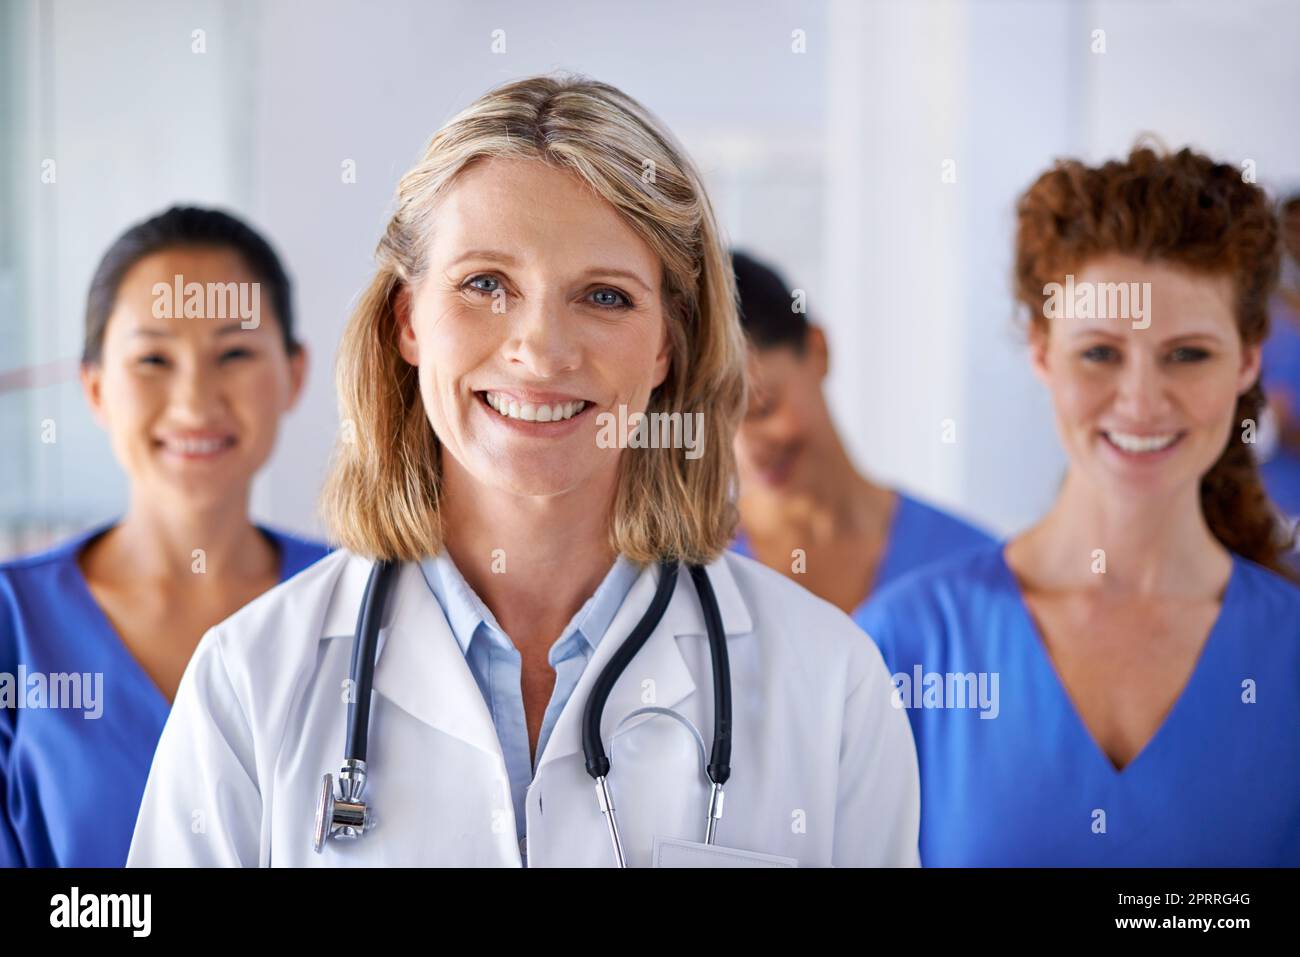 Vous pouvez leur faire confiance pour vos besoins en matière de soins de santé. Portrait d'une femme médecin mature avec un groupe d'infirmières debout derrière elle. Banque D'Images